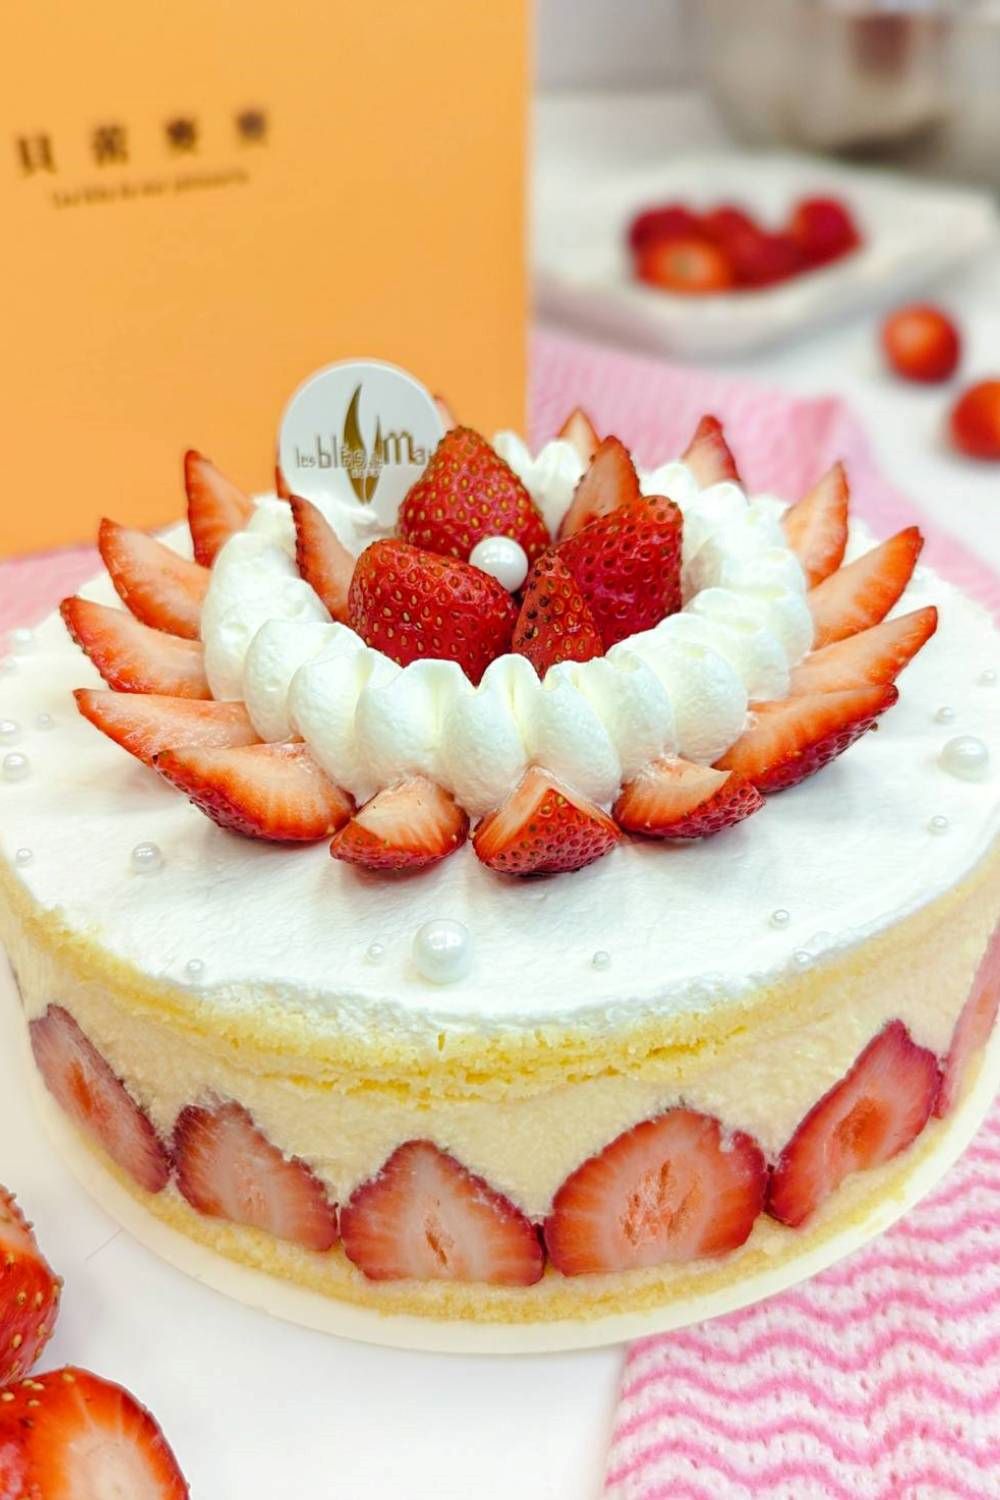 貝蕾麥麥 6吋草莓蛋糕(#草莓#生日蛋糕#慶生#團聚#圓形蛋